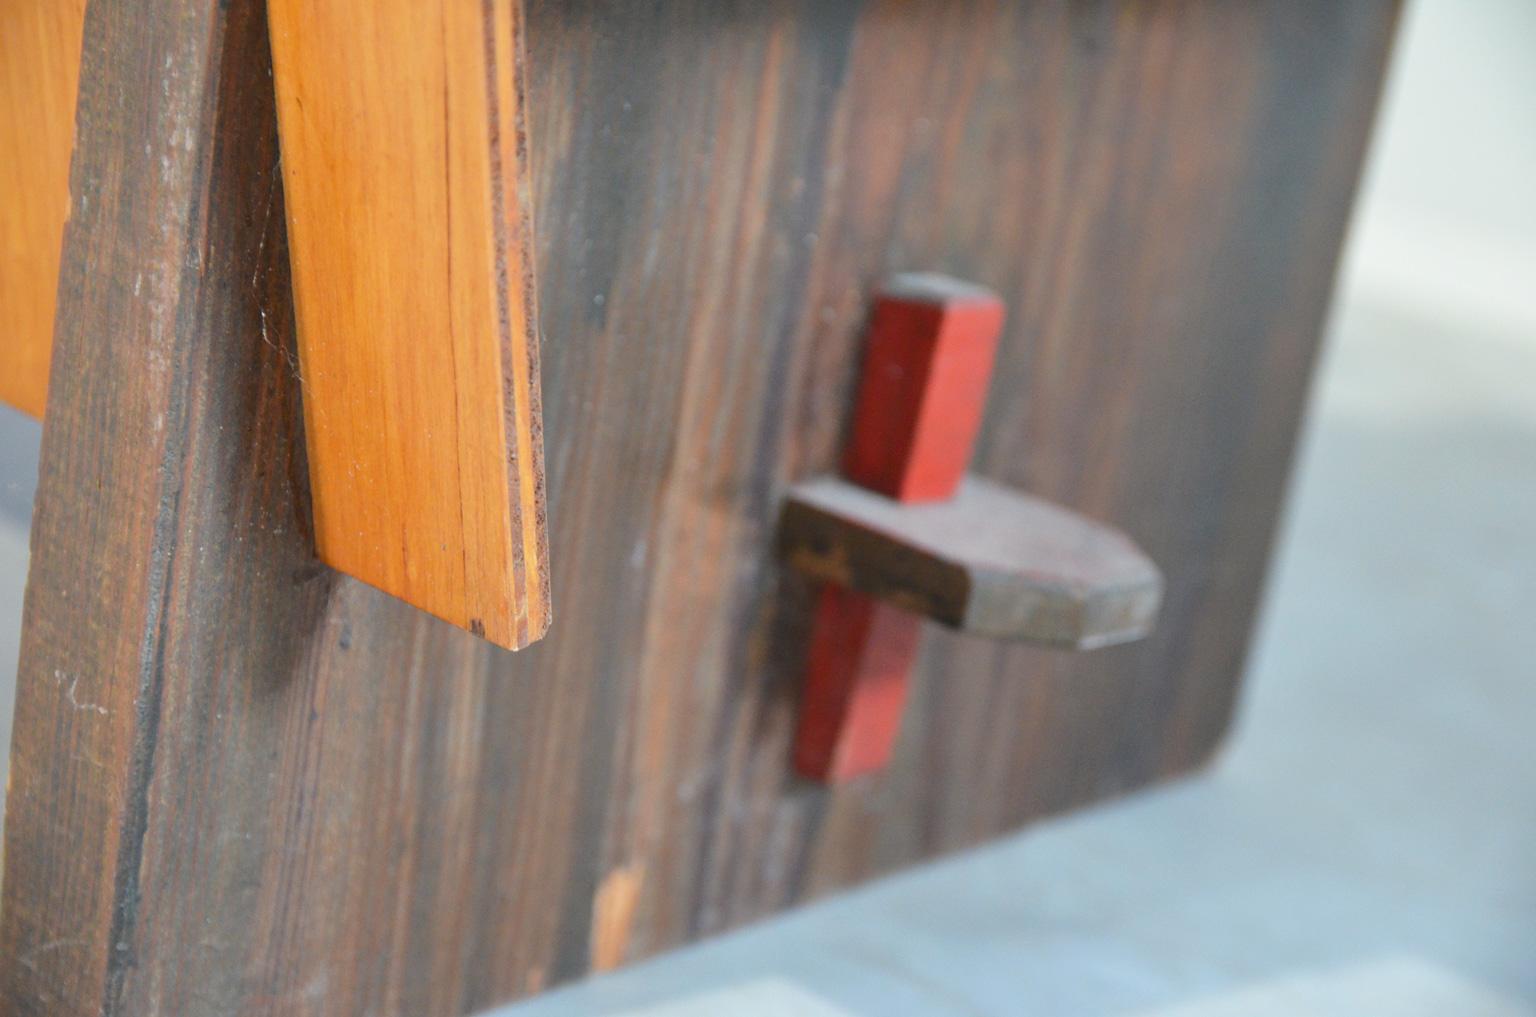 Wooden Bench in the Manner of Dutch De Stijl designer Gerrit Rietveld 1